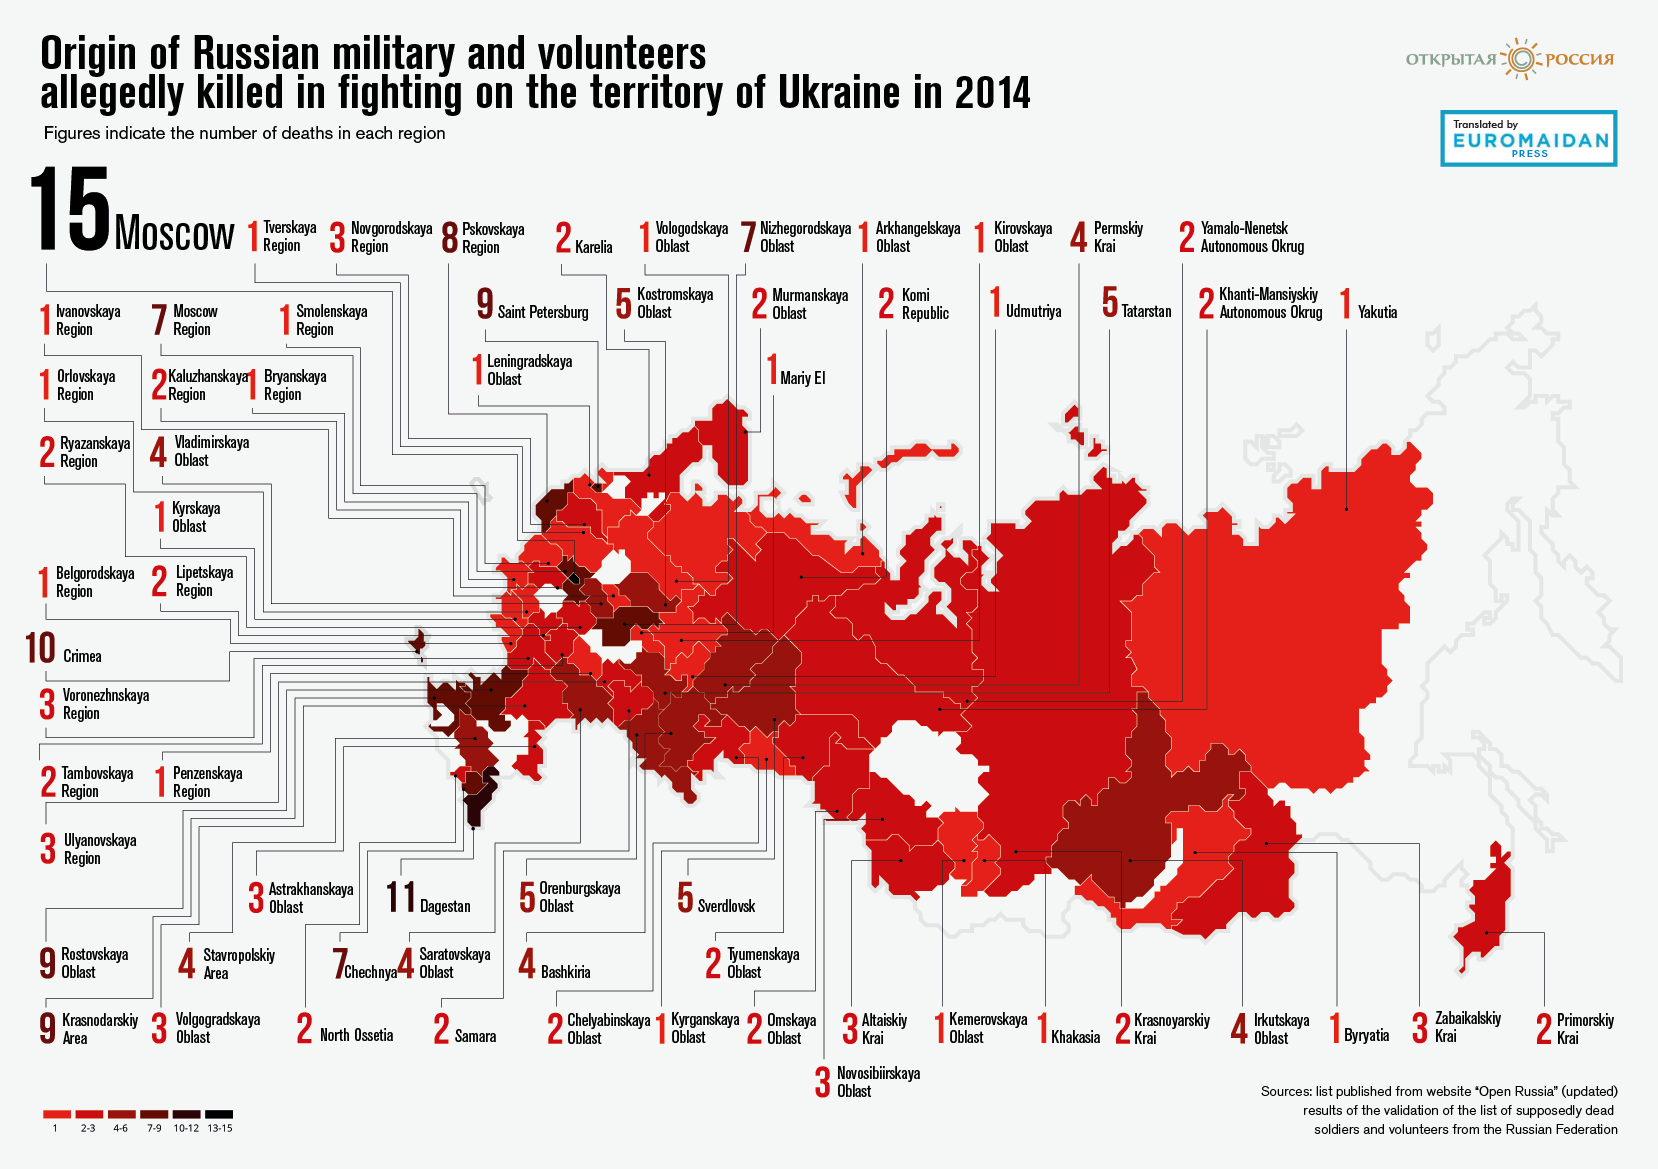 Russisches Internet Projekt zur Identifizierung von in der Ukraine gefallenen russischen Soldaten